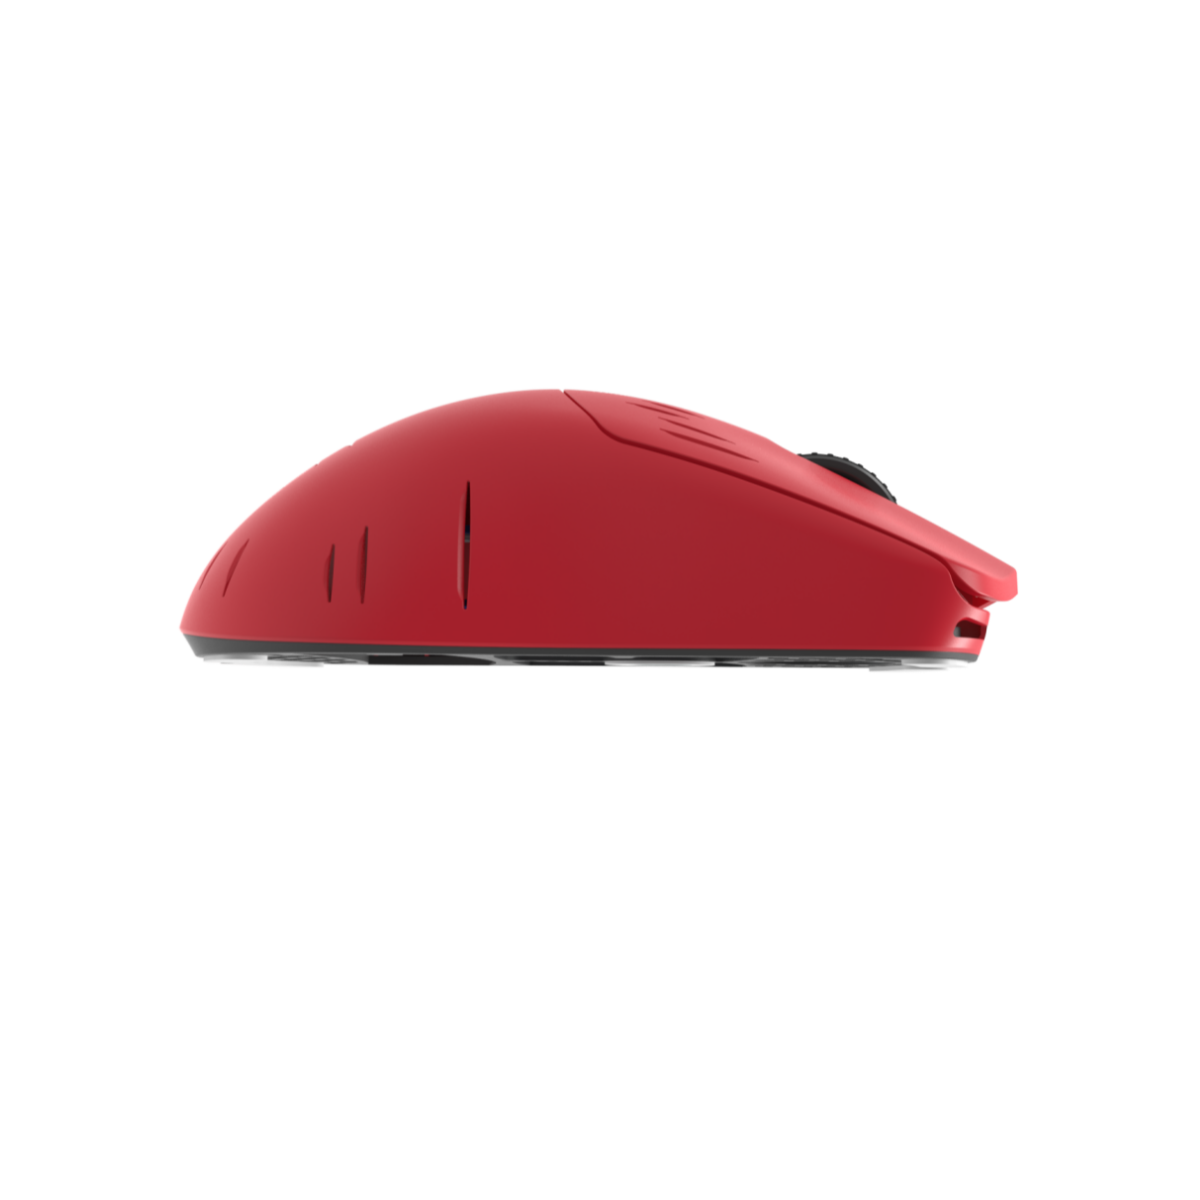 G-Wolves HT-S2 8K Wireless Mouse (★ Pre-Order ) ~32.9grams